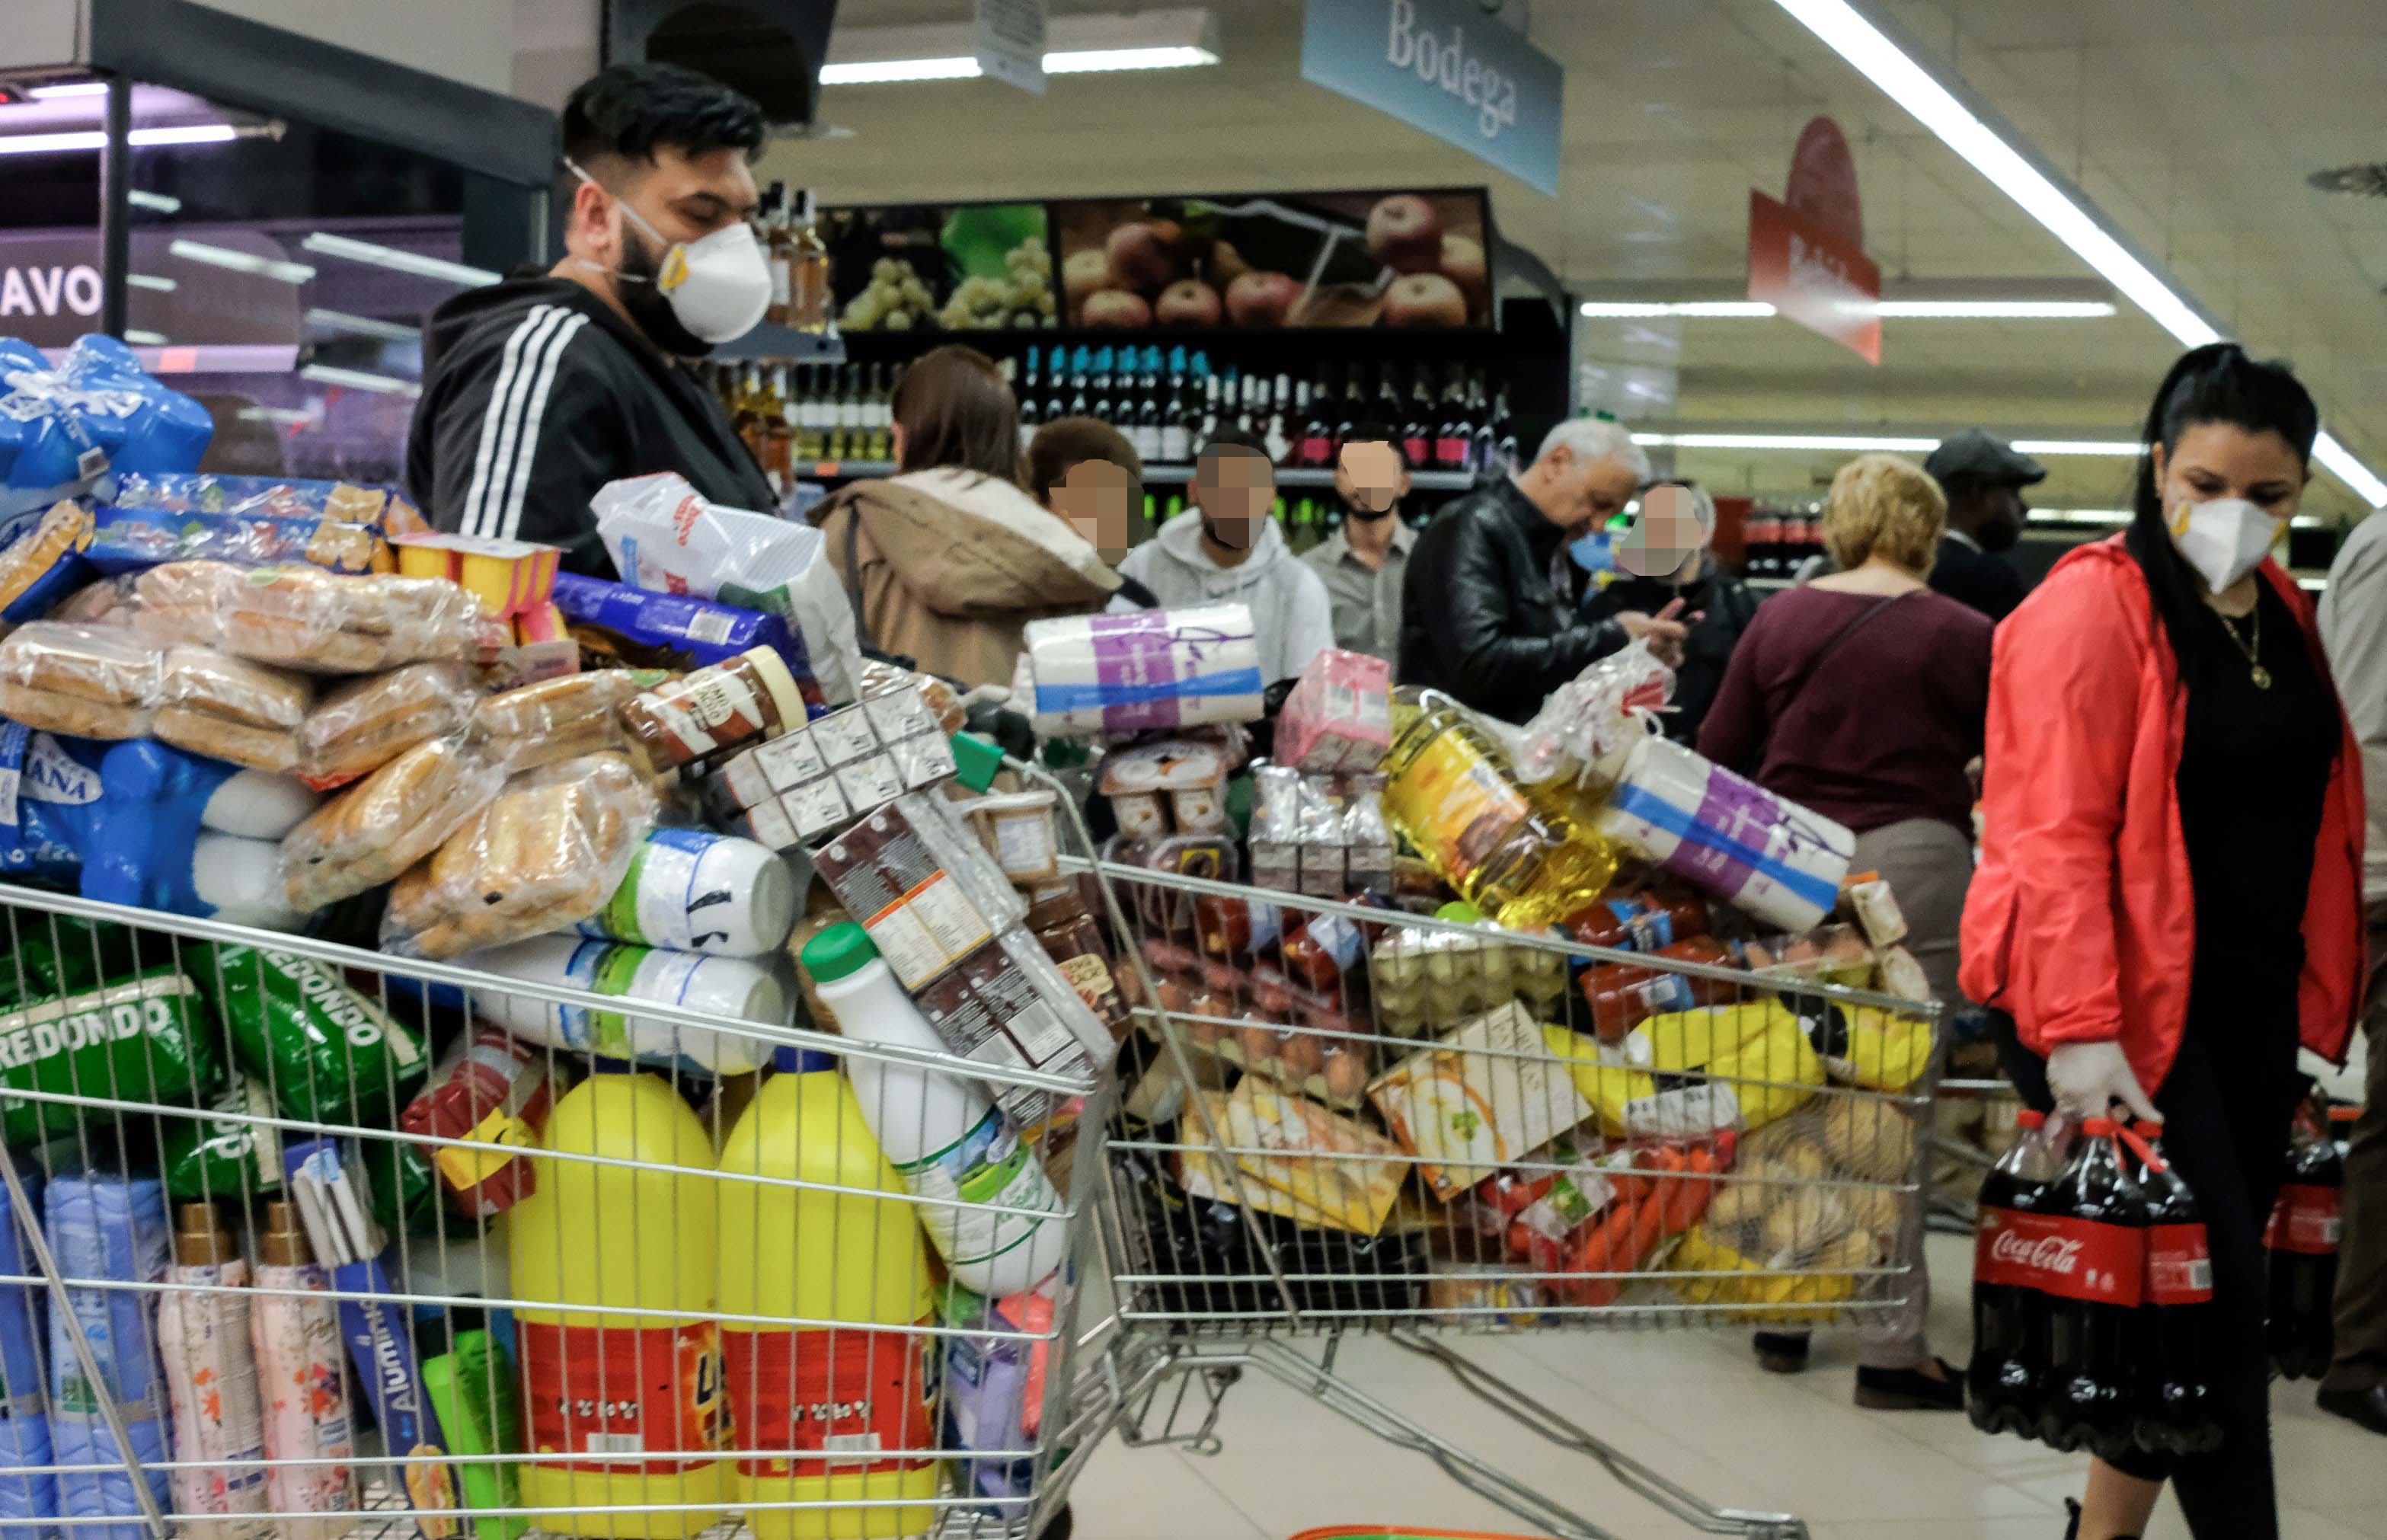 ¿Lo has notado? Aumentos de precios en los supermercados durante la pandemia